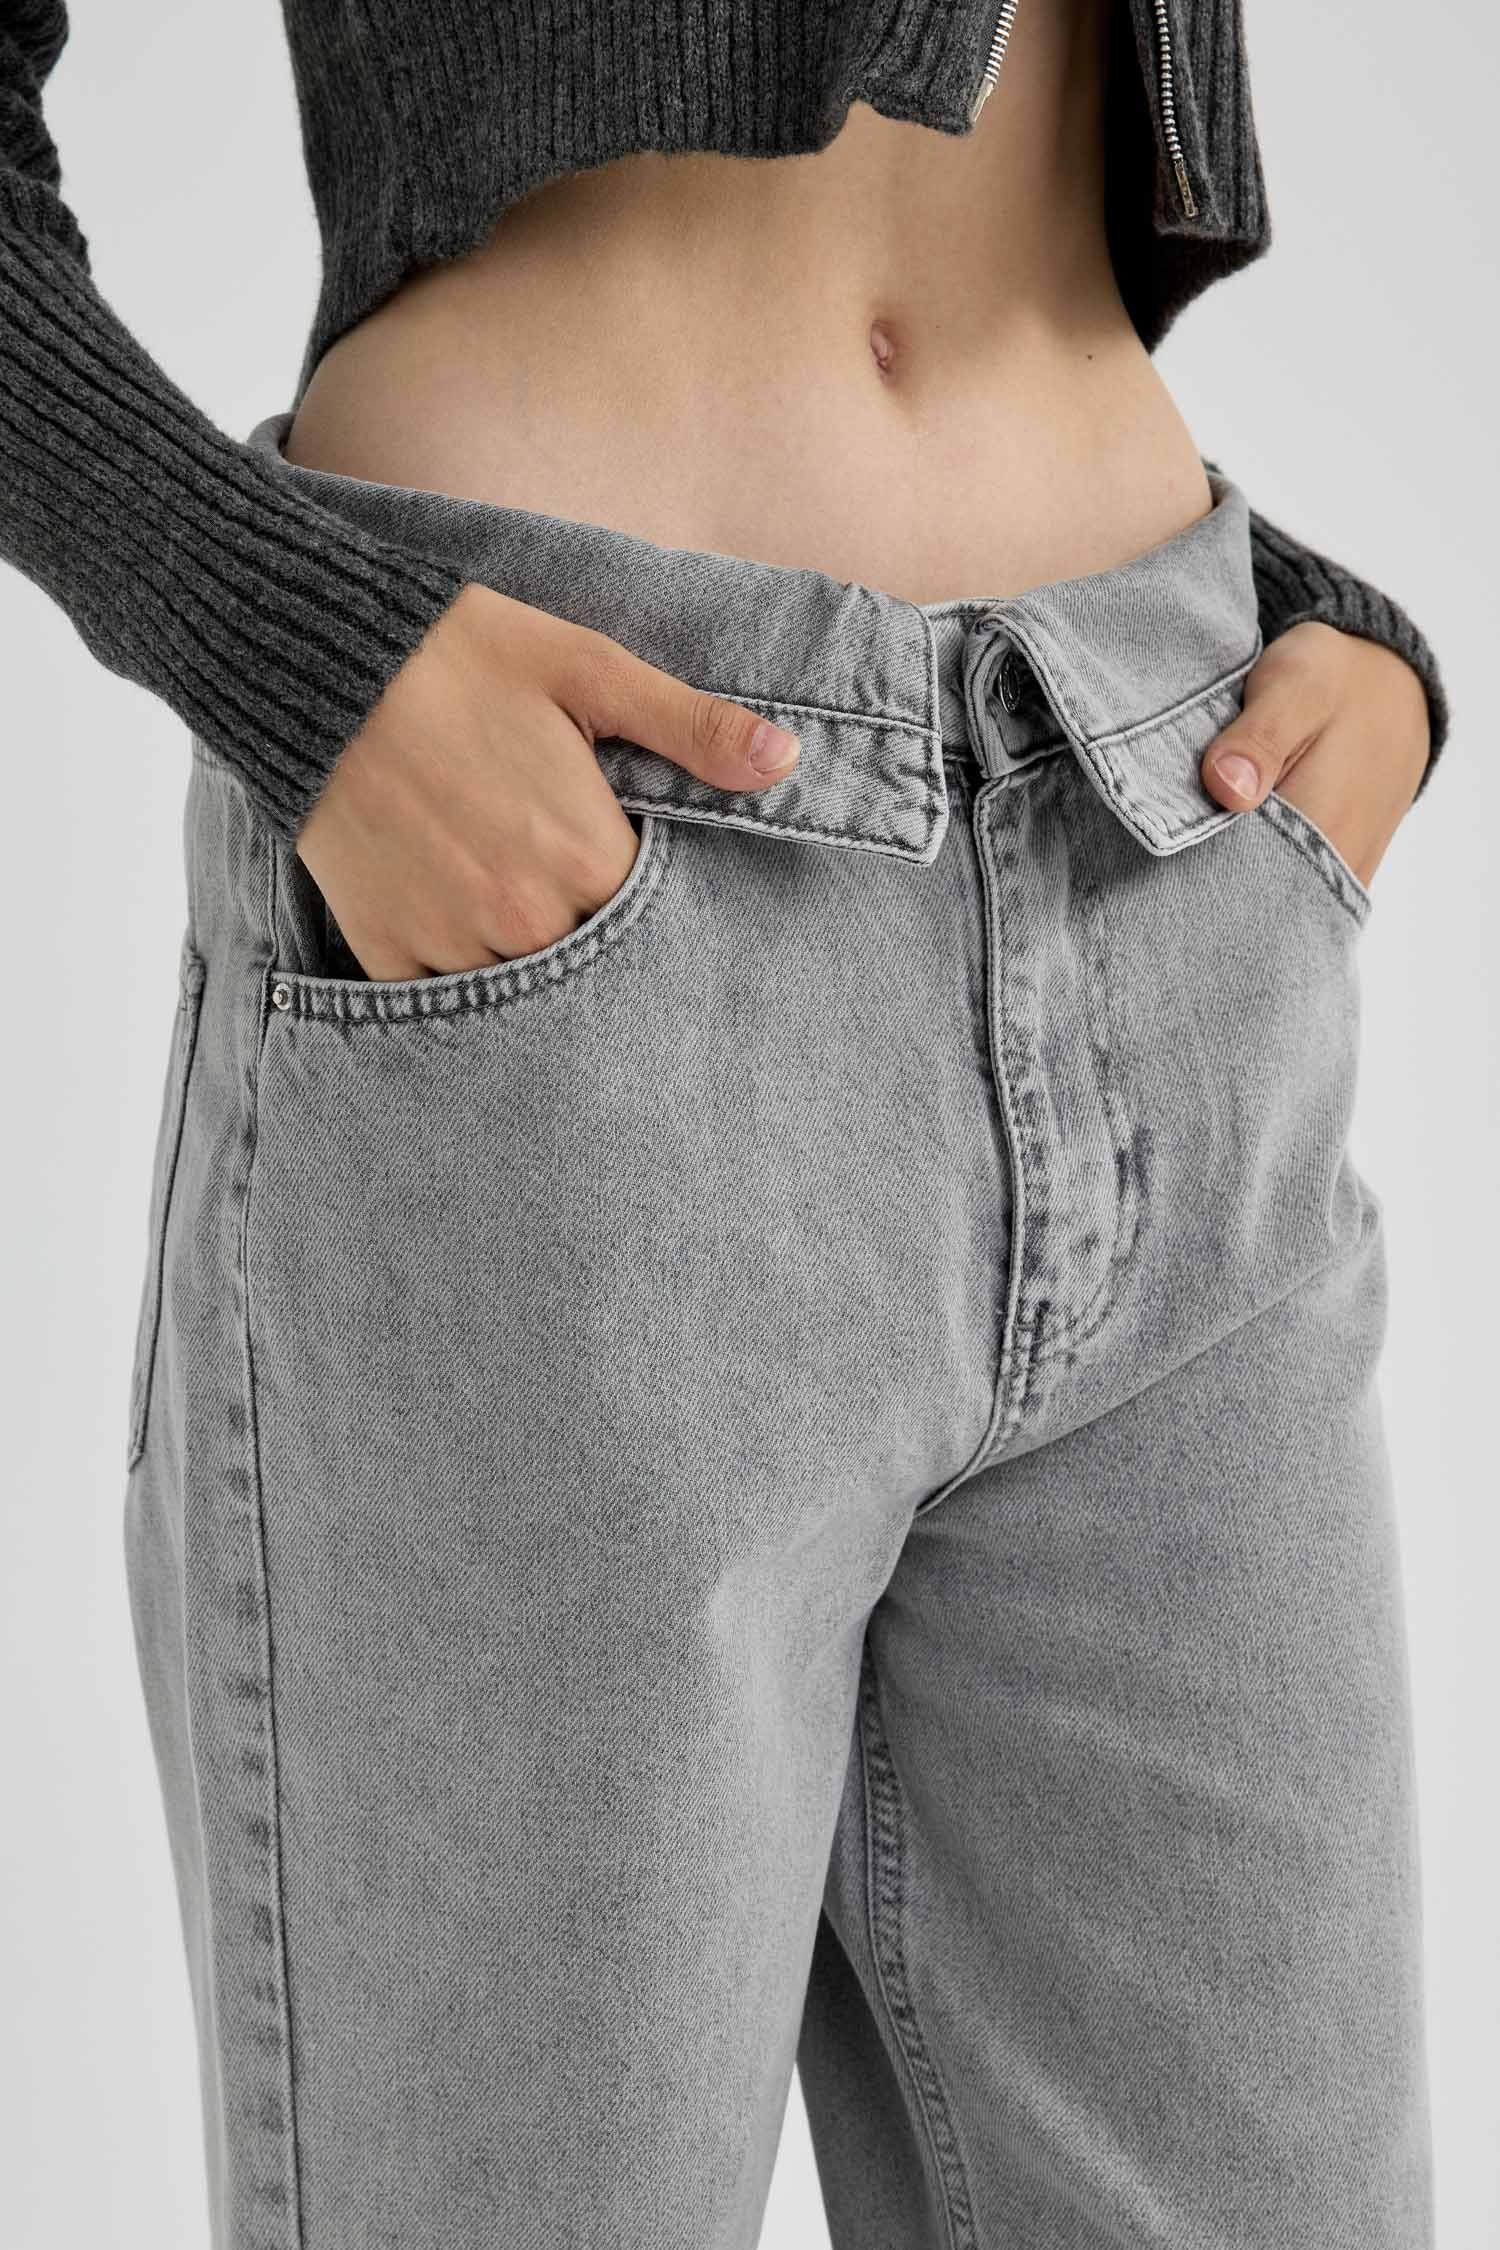 Weite Weite DeFacto 90'S Damen Jeans WIDE LEG Jeans